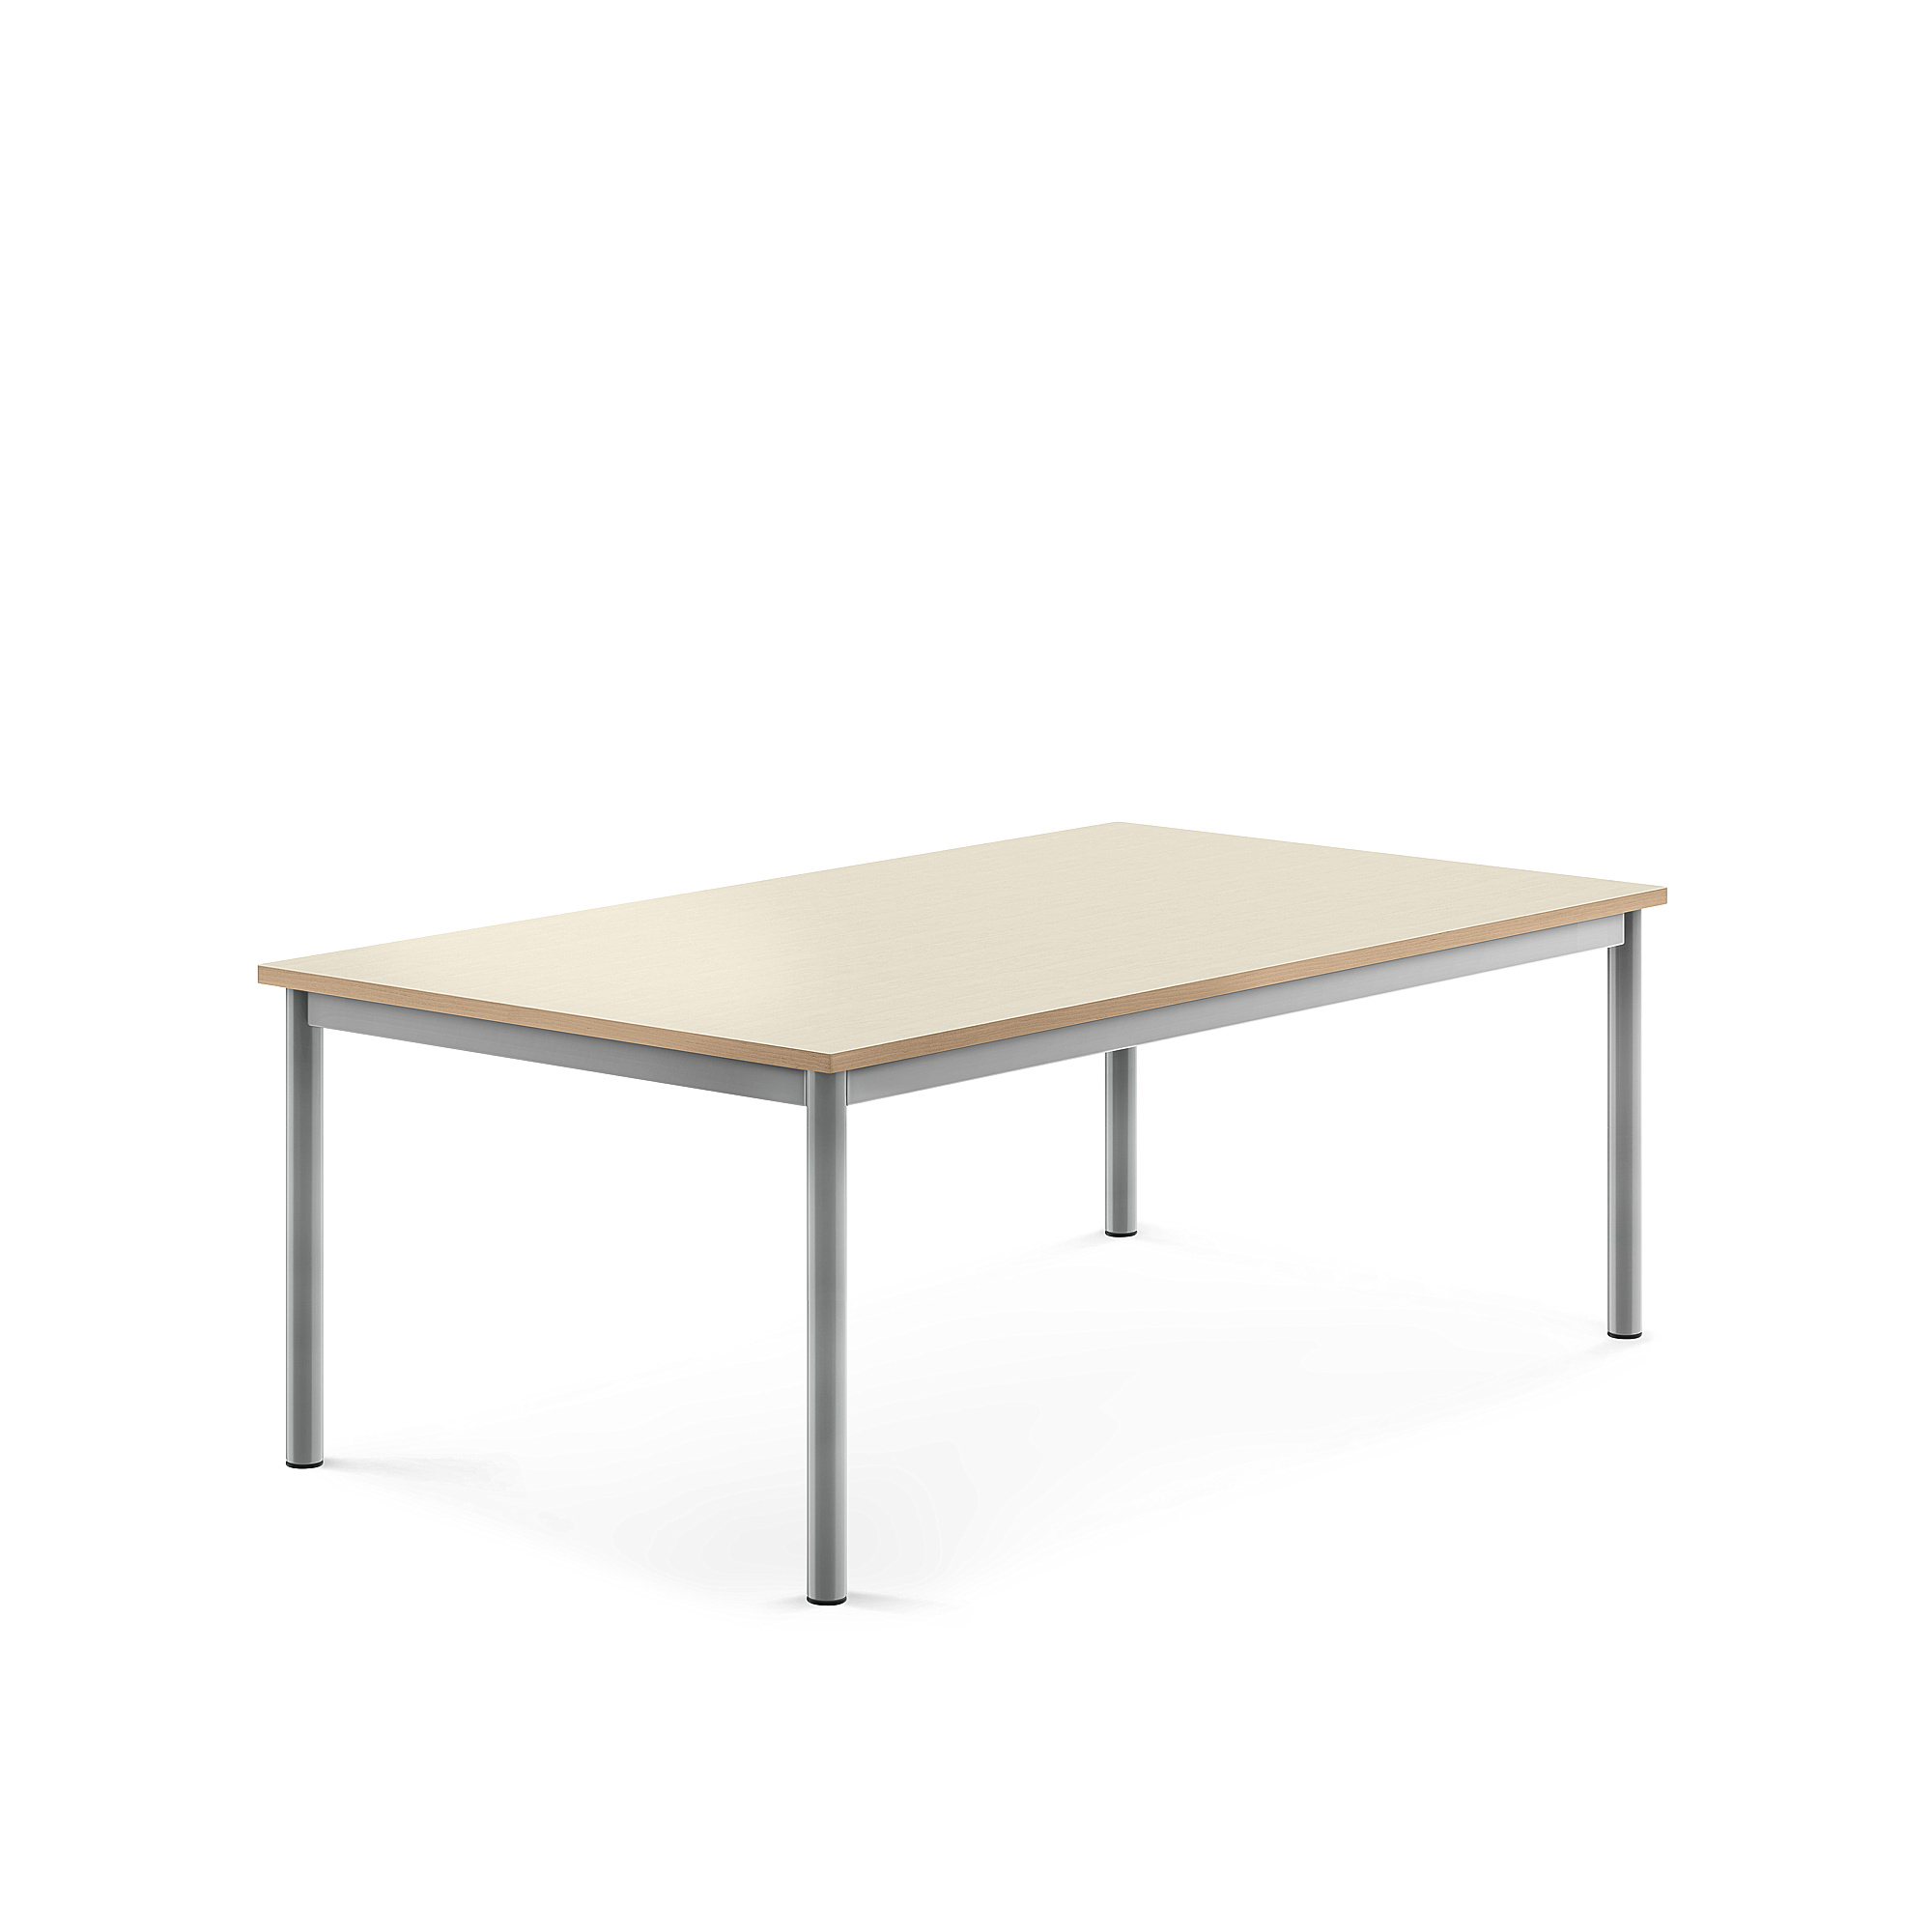 Stůl BORÅS, 1400x800x500 mm, stříbrné nohy, HPL deska, bříza